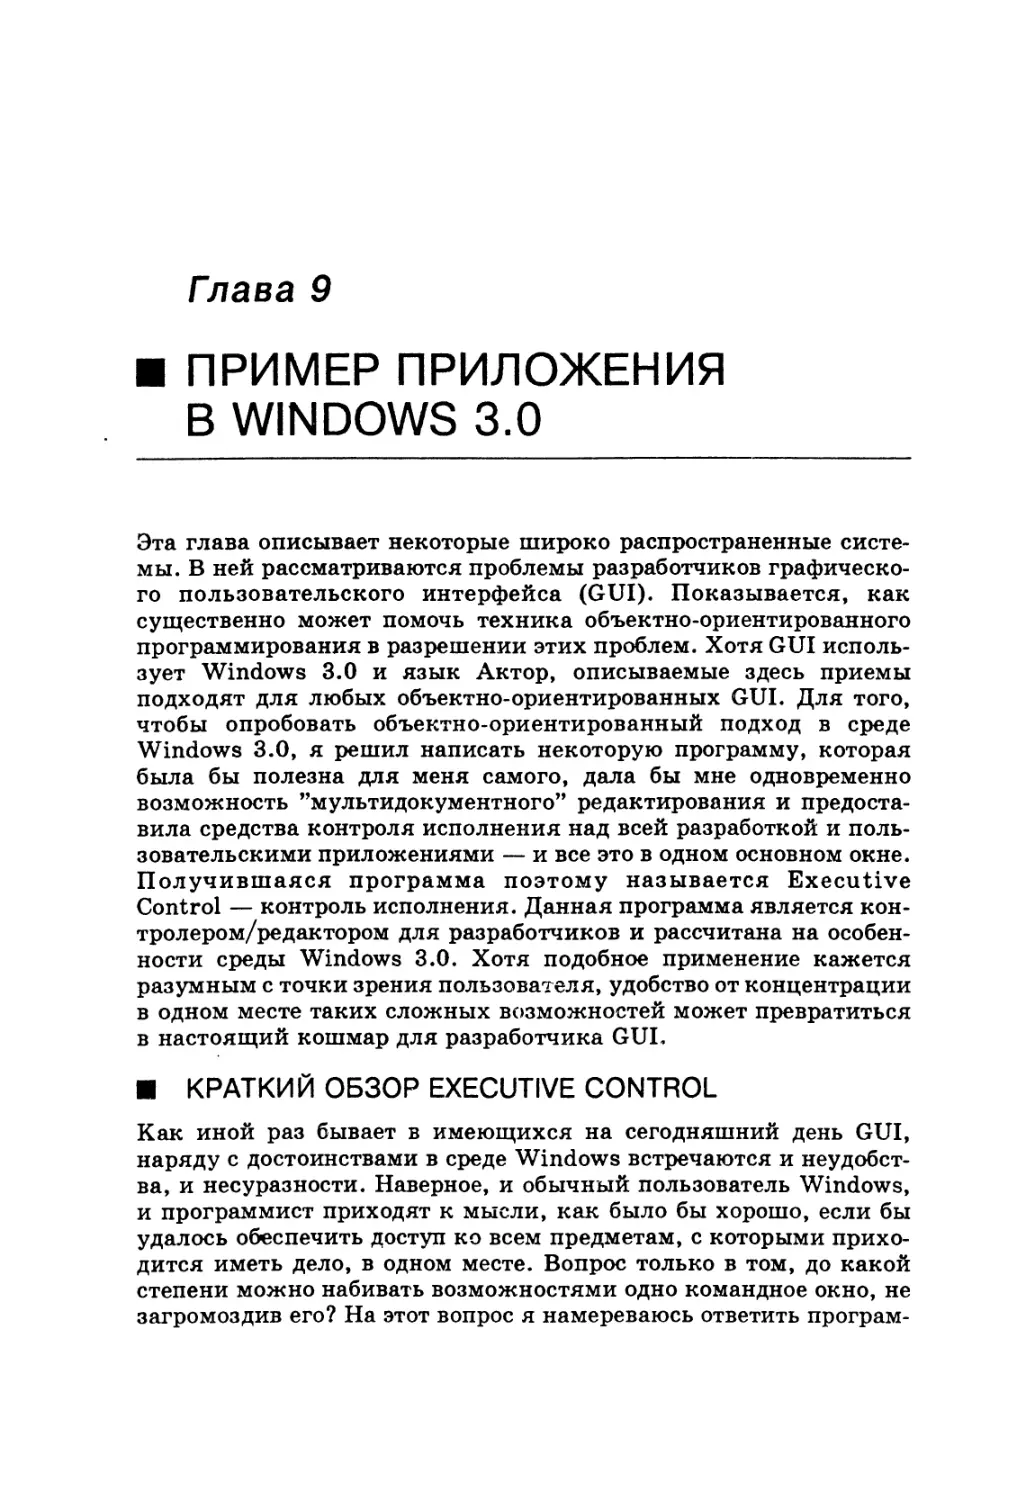 Глава 9. Пример приложения в Windows 3.0
Краткий обзор Executive Control